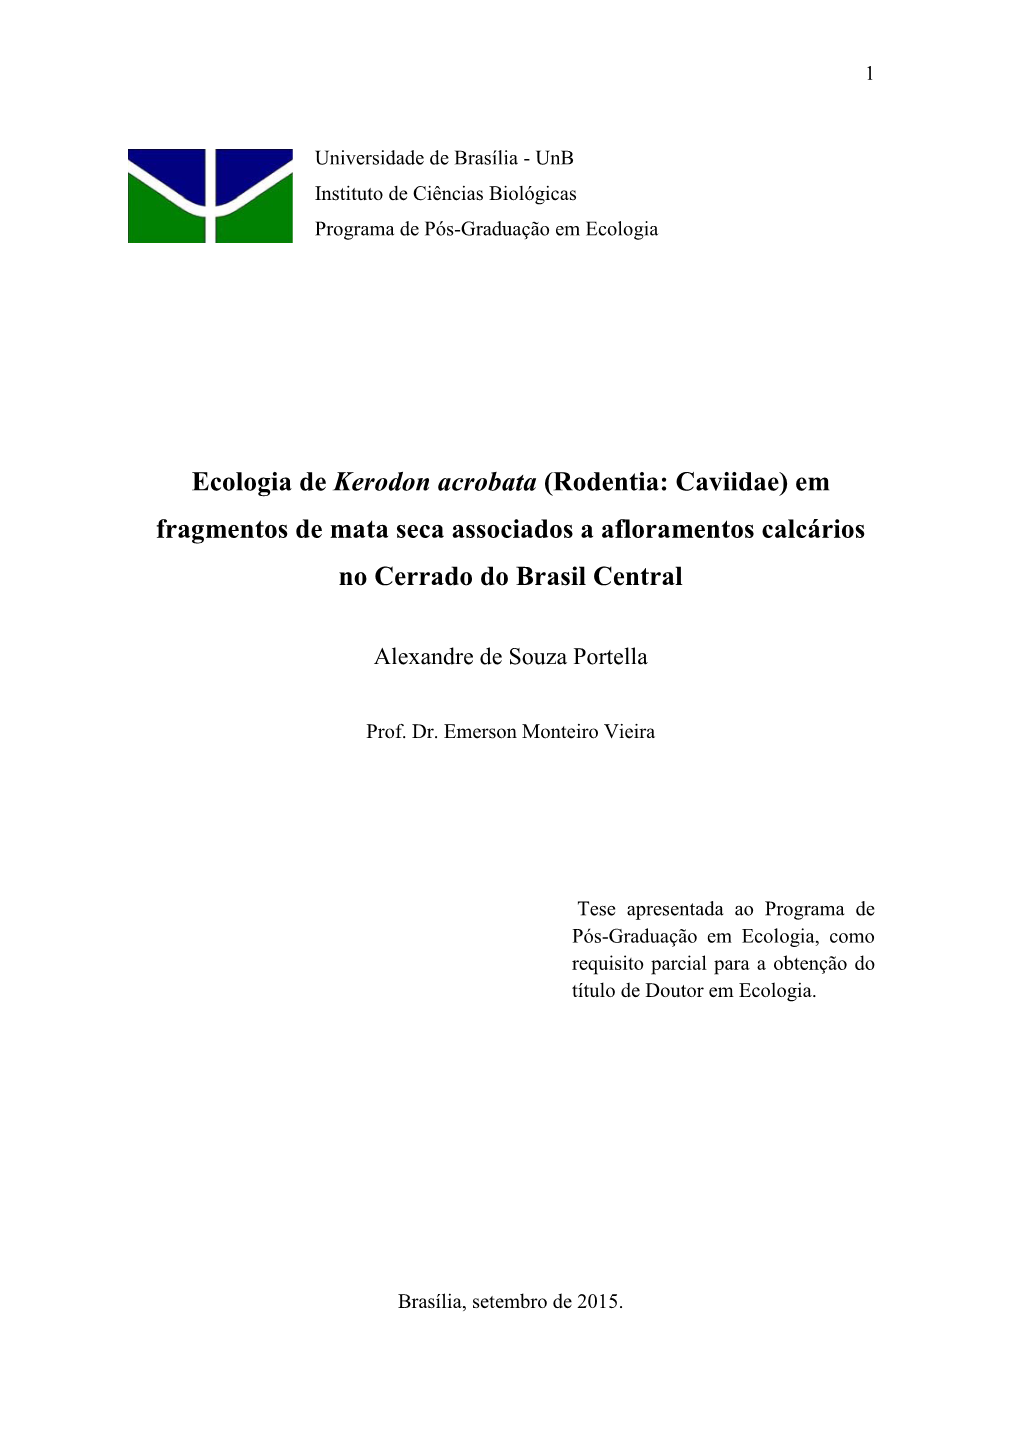 Ecologia De Kerodon Acrobata (Rodentia: Caviidae) Em Fragmentos De Mata Seca Associados a Afloramentos Calcários No Cerrado Do Brasil Central